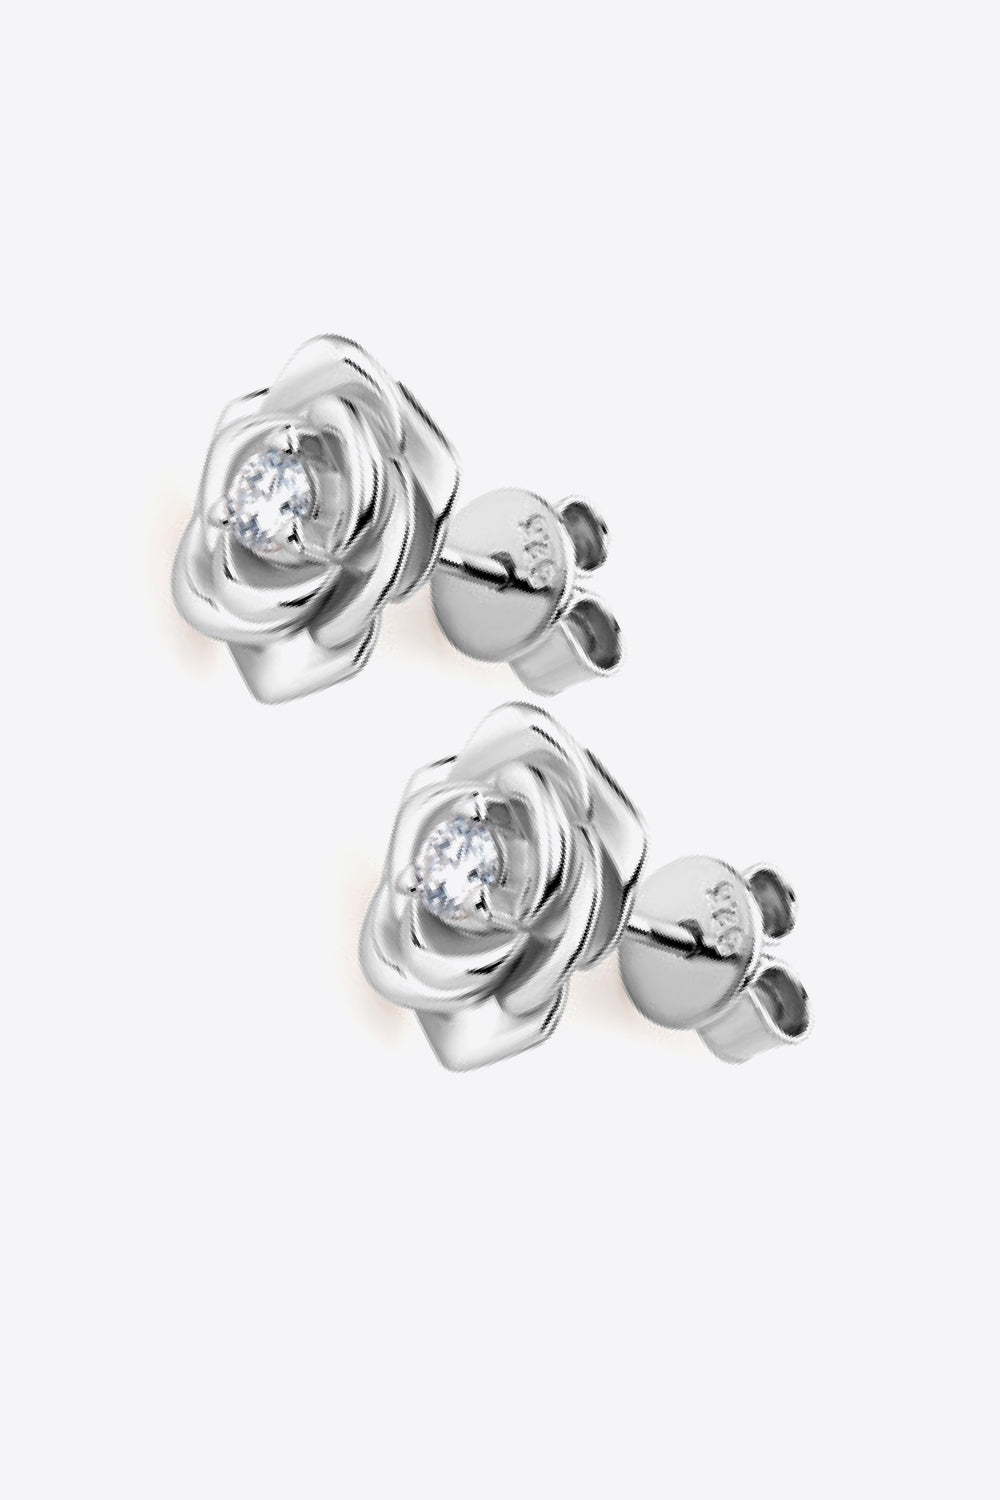 .2 Carat Adored Moissanite Flower 925 Sterling Silver Earrings